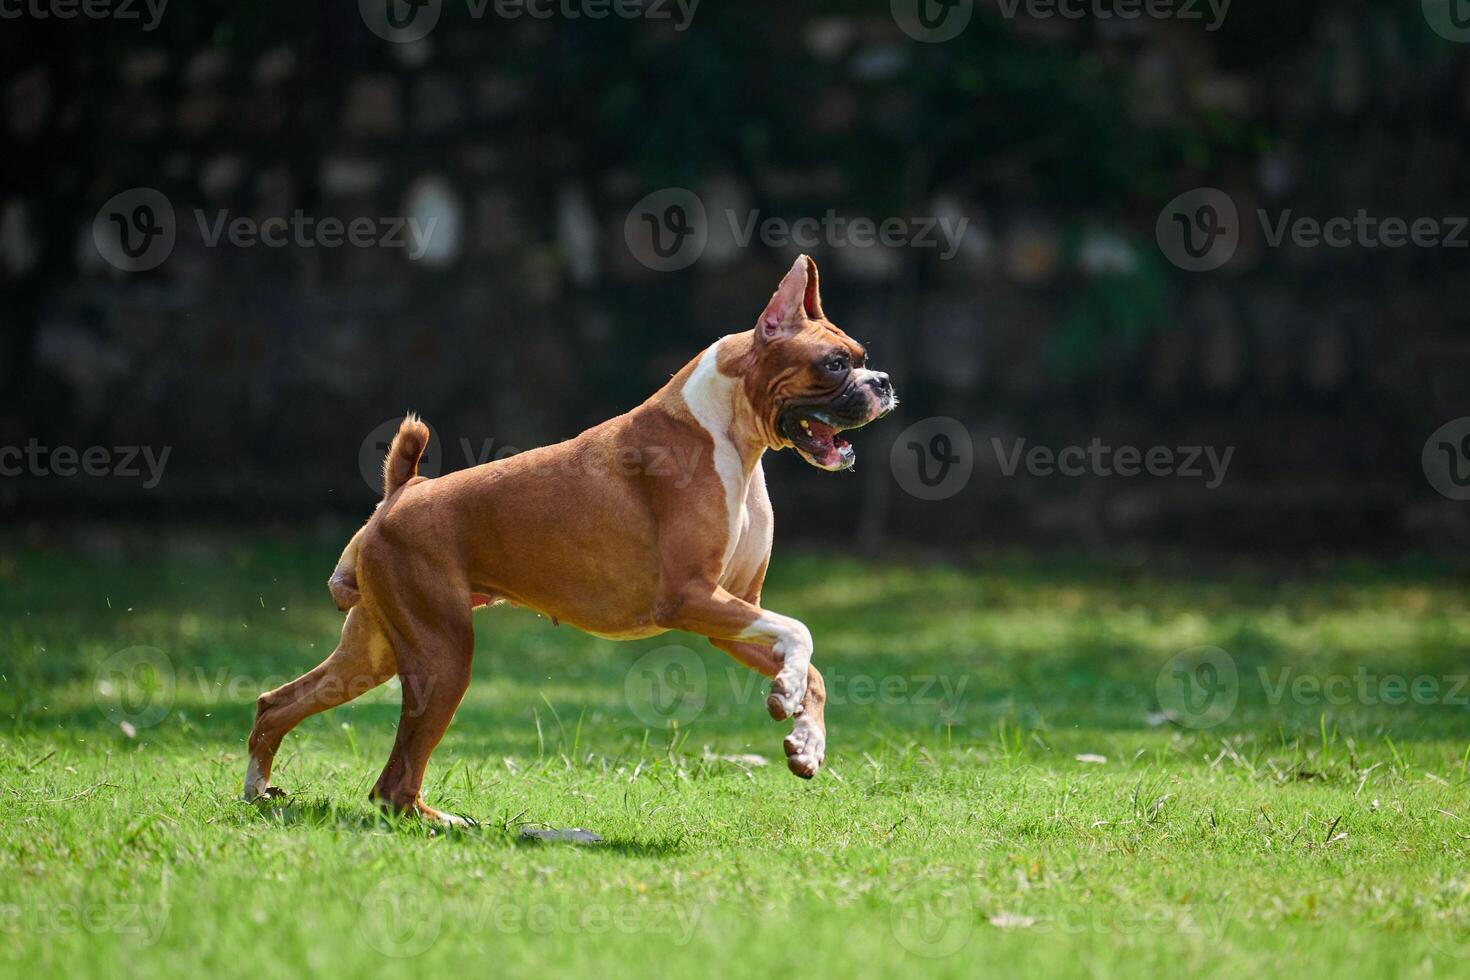 bokser hond rennen en jumping Aan groen gras zomer gazon buitenshuis park wandelen met volwassen huisdier foto